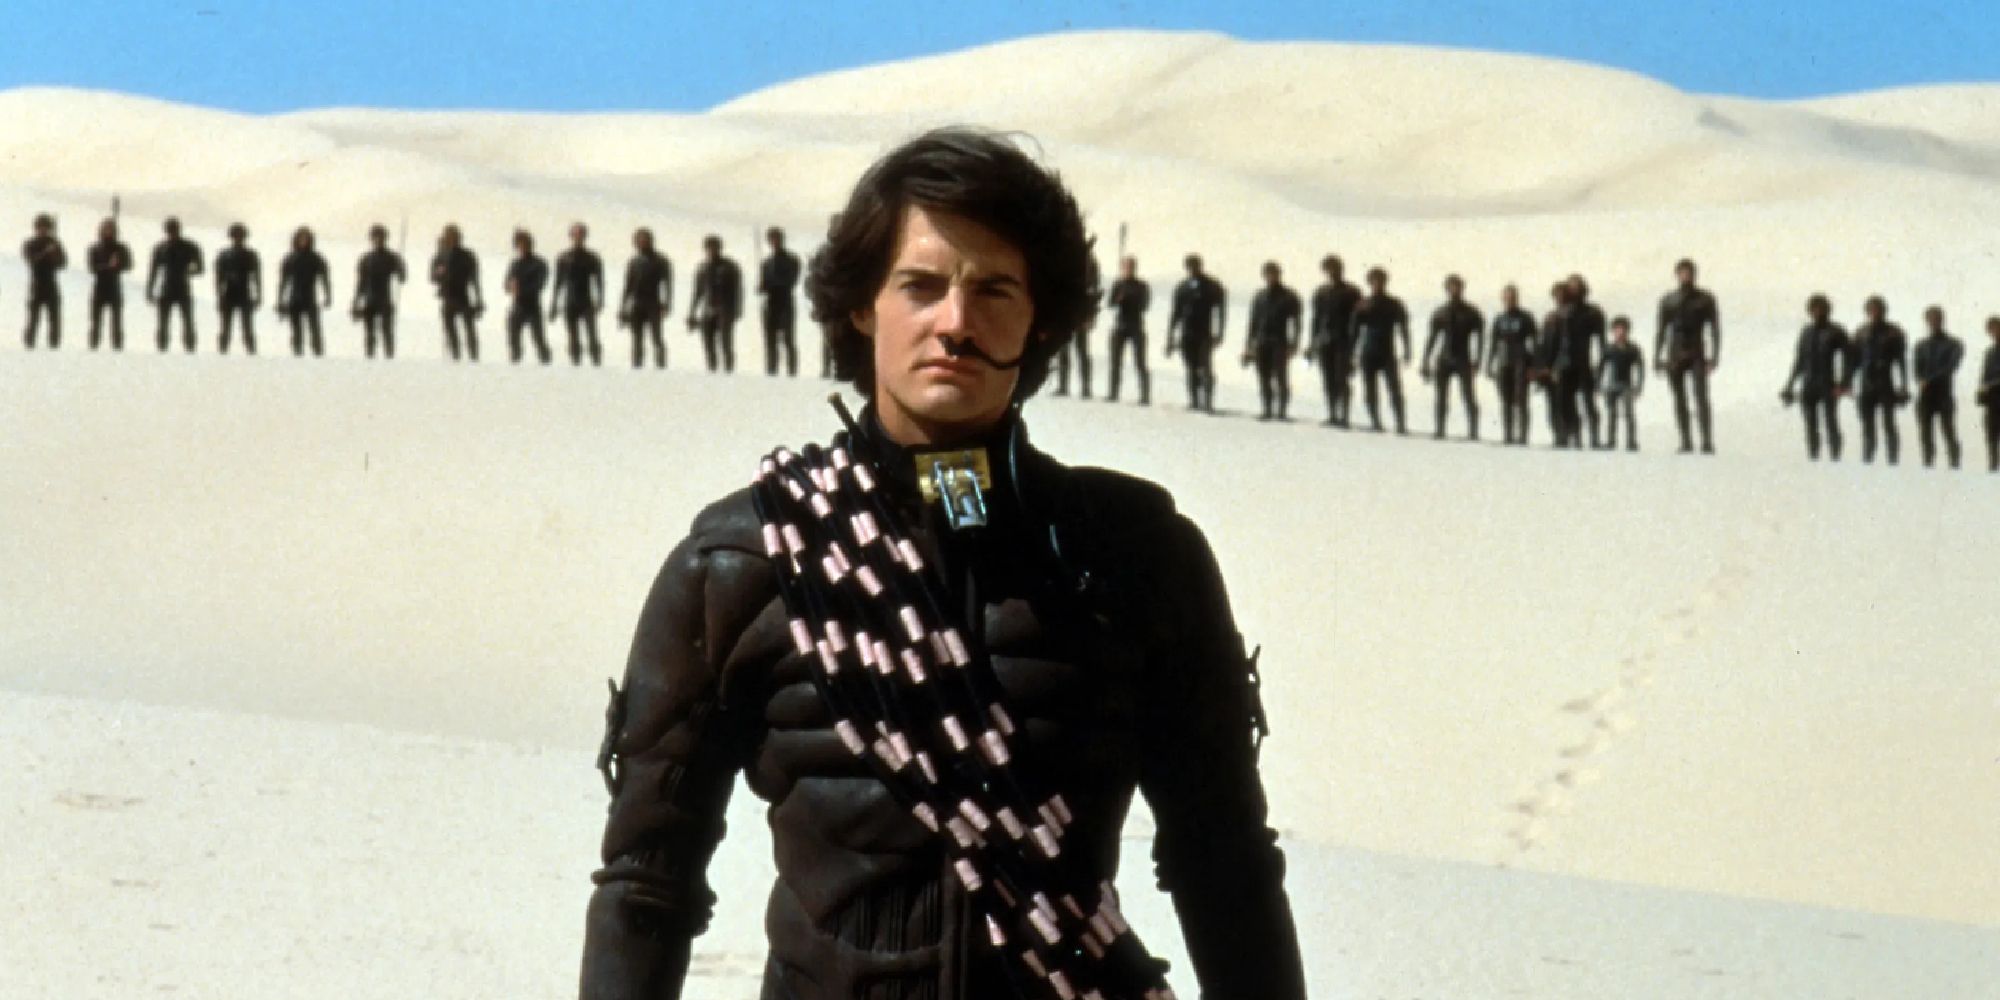 Dune - 1984